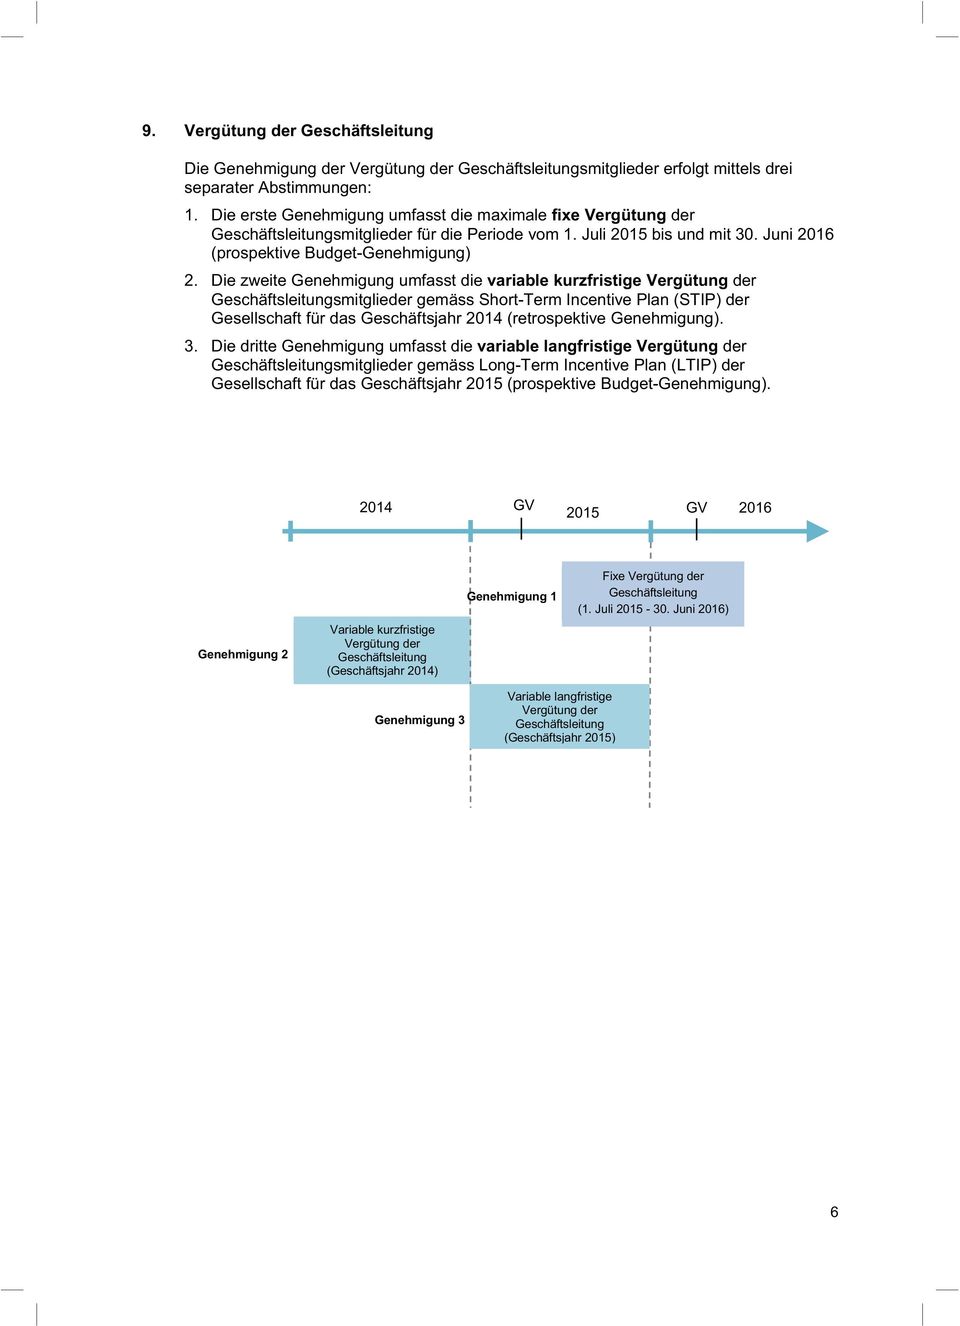 Die zweite Genehmigung umfasst die variable kurzfristige Vergütung der Geschäftsleitungsmitglieder gemäss Short-Term Incentive Plan (STIP) der Gesellschaft für das Geschäftsjahr 2014 (retrospektive